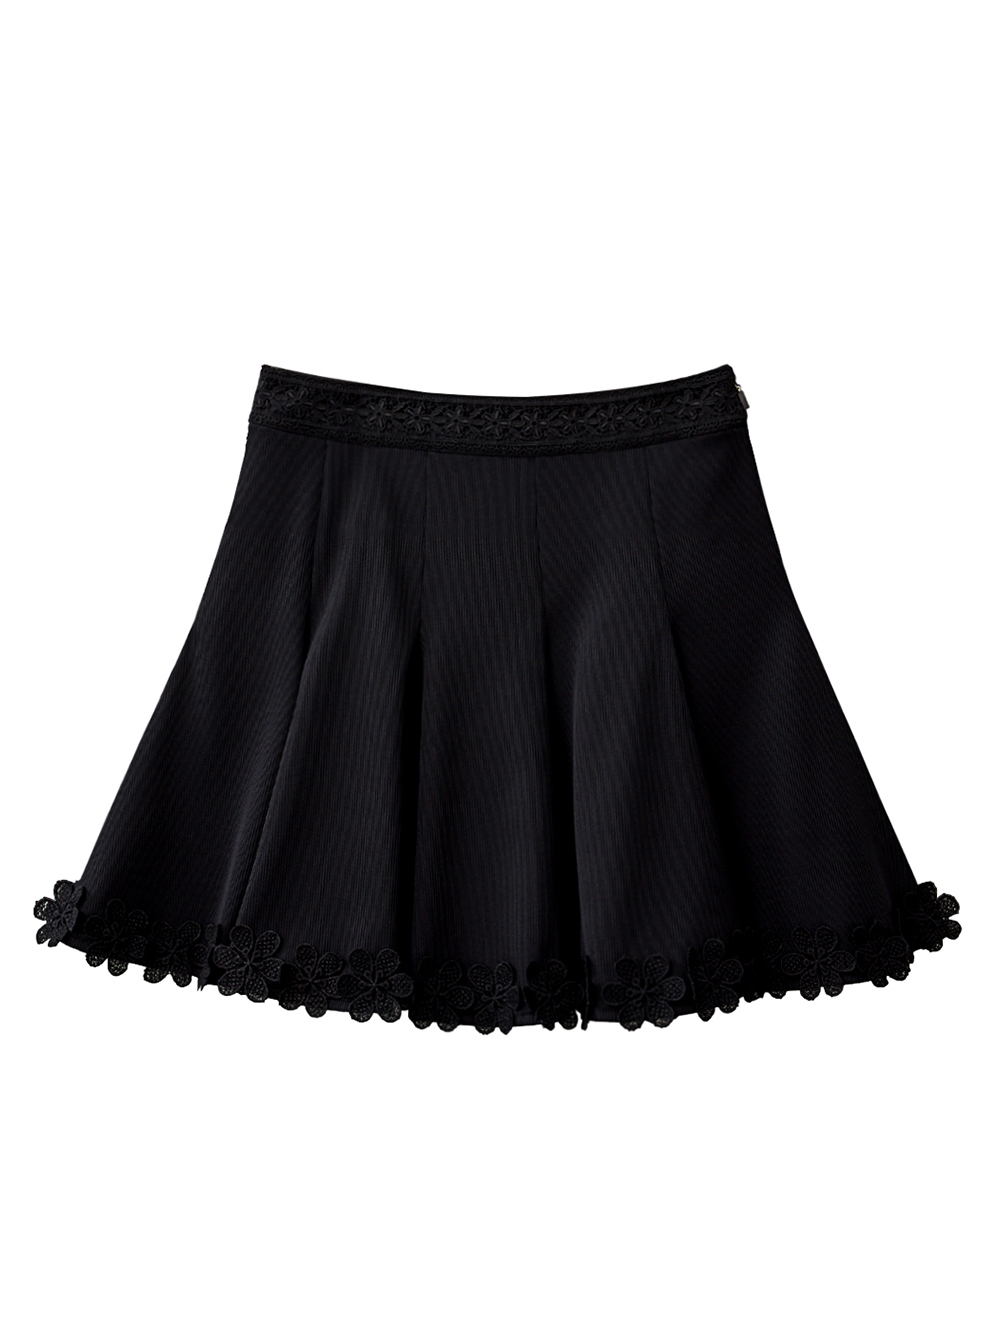 UTAA Blossom Prime Flare Skirt : Black (UD2SKF200BK)